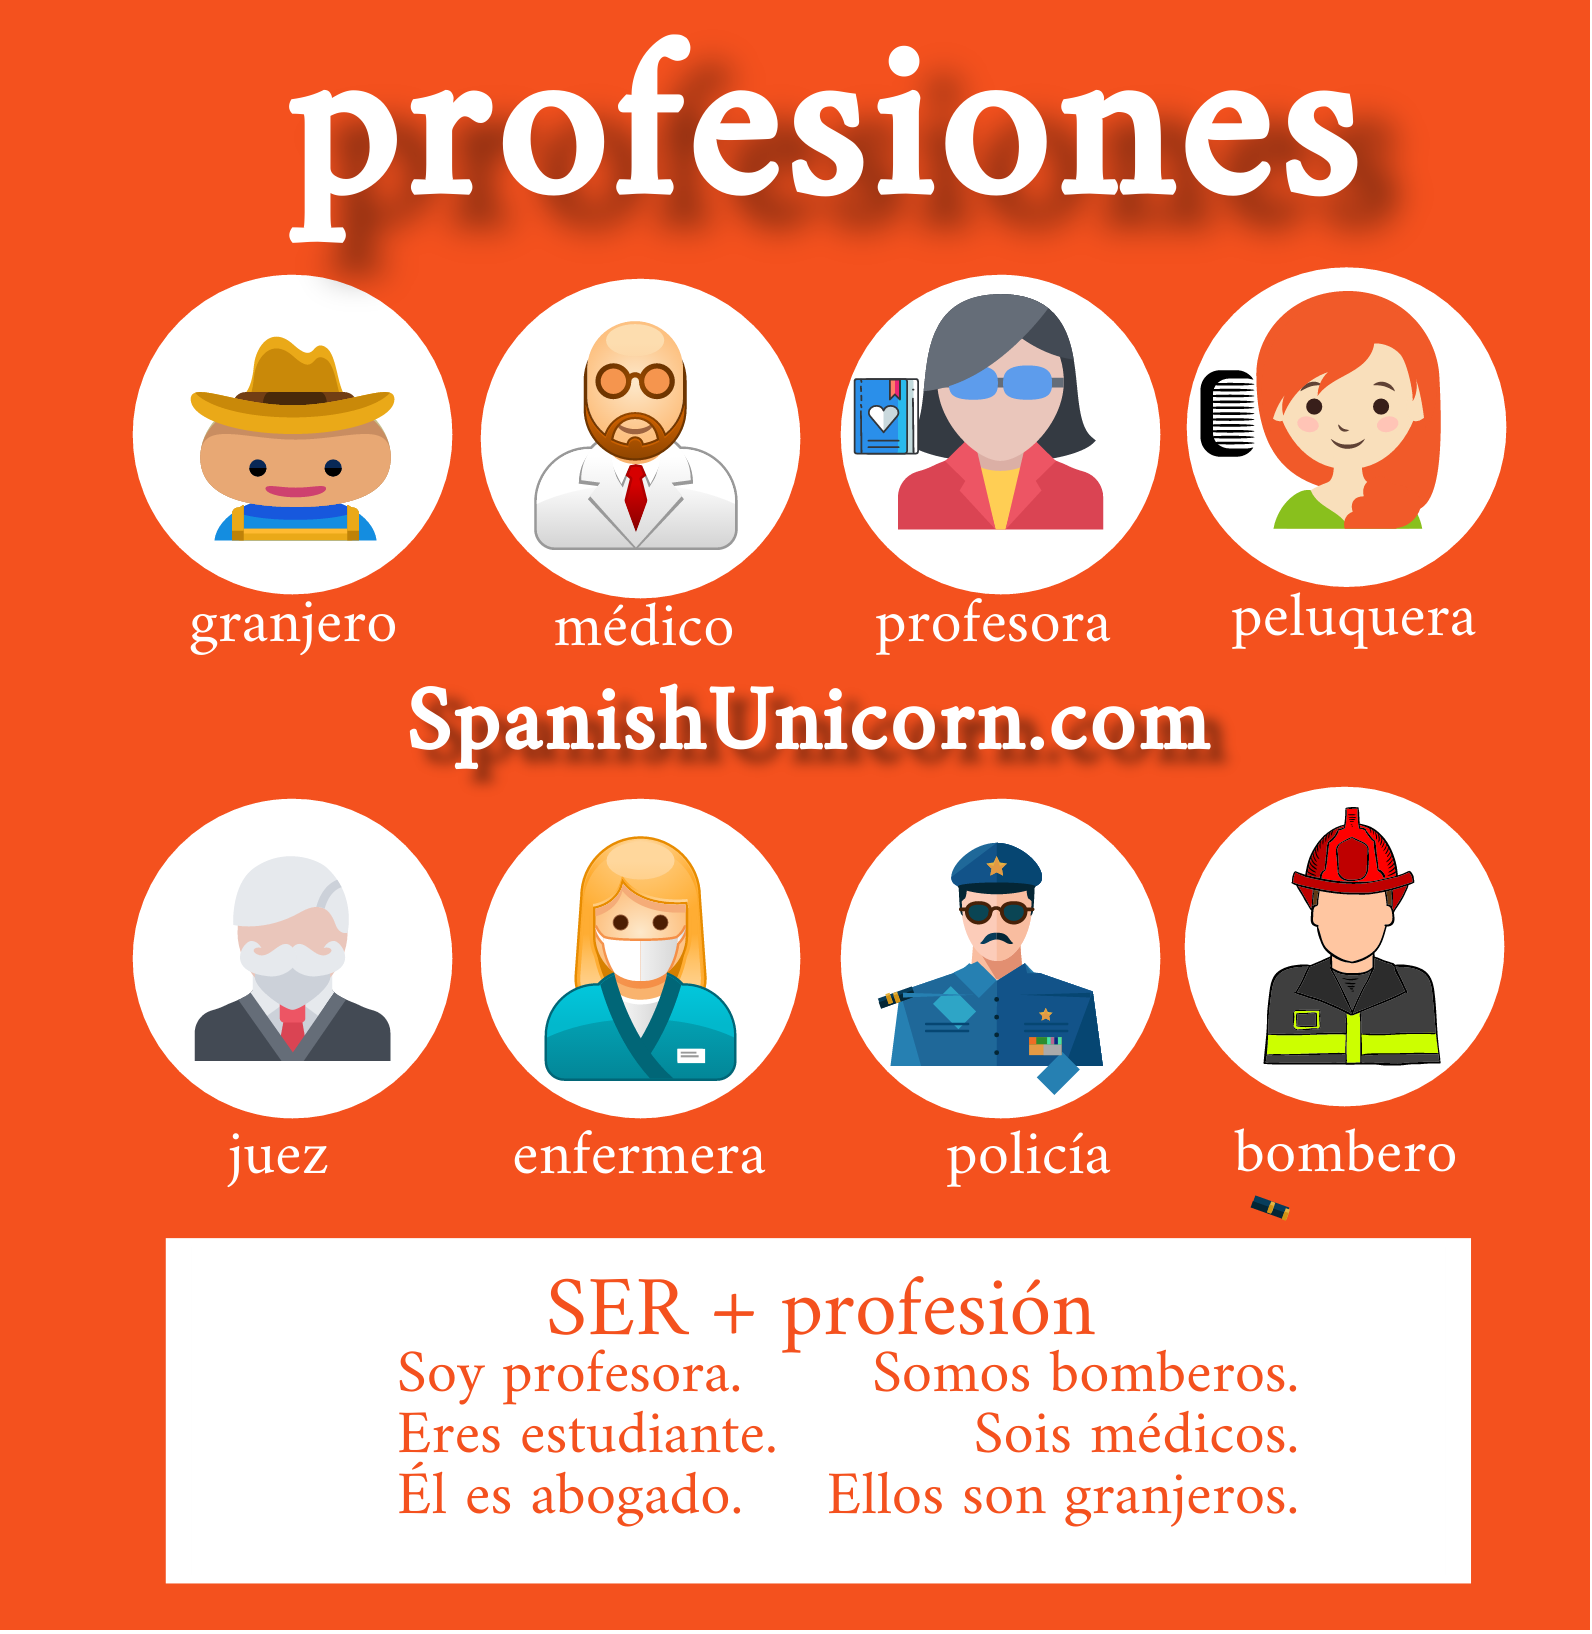 Profesiones en español